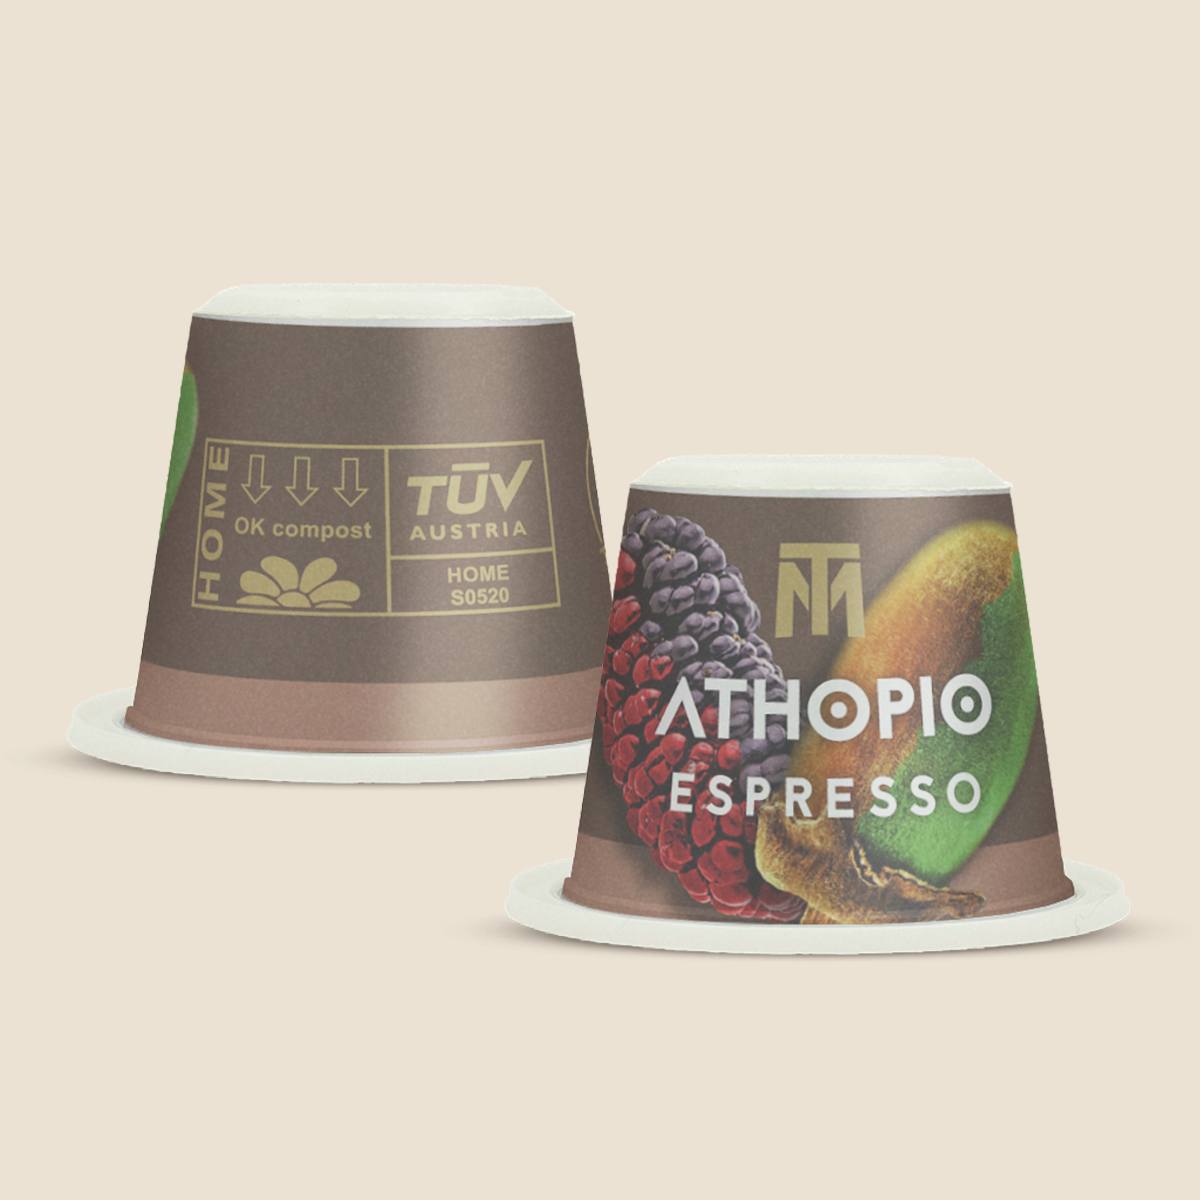 ATHOPIO Espresso Organic Fair Trade Coffee Capsules refill bag